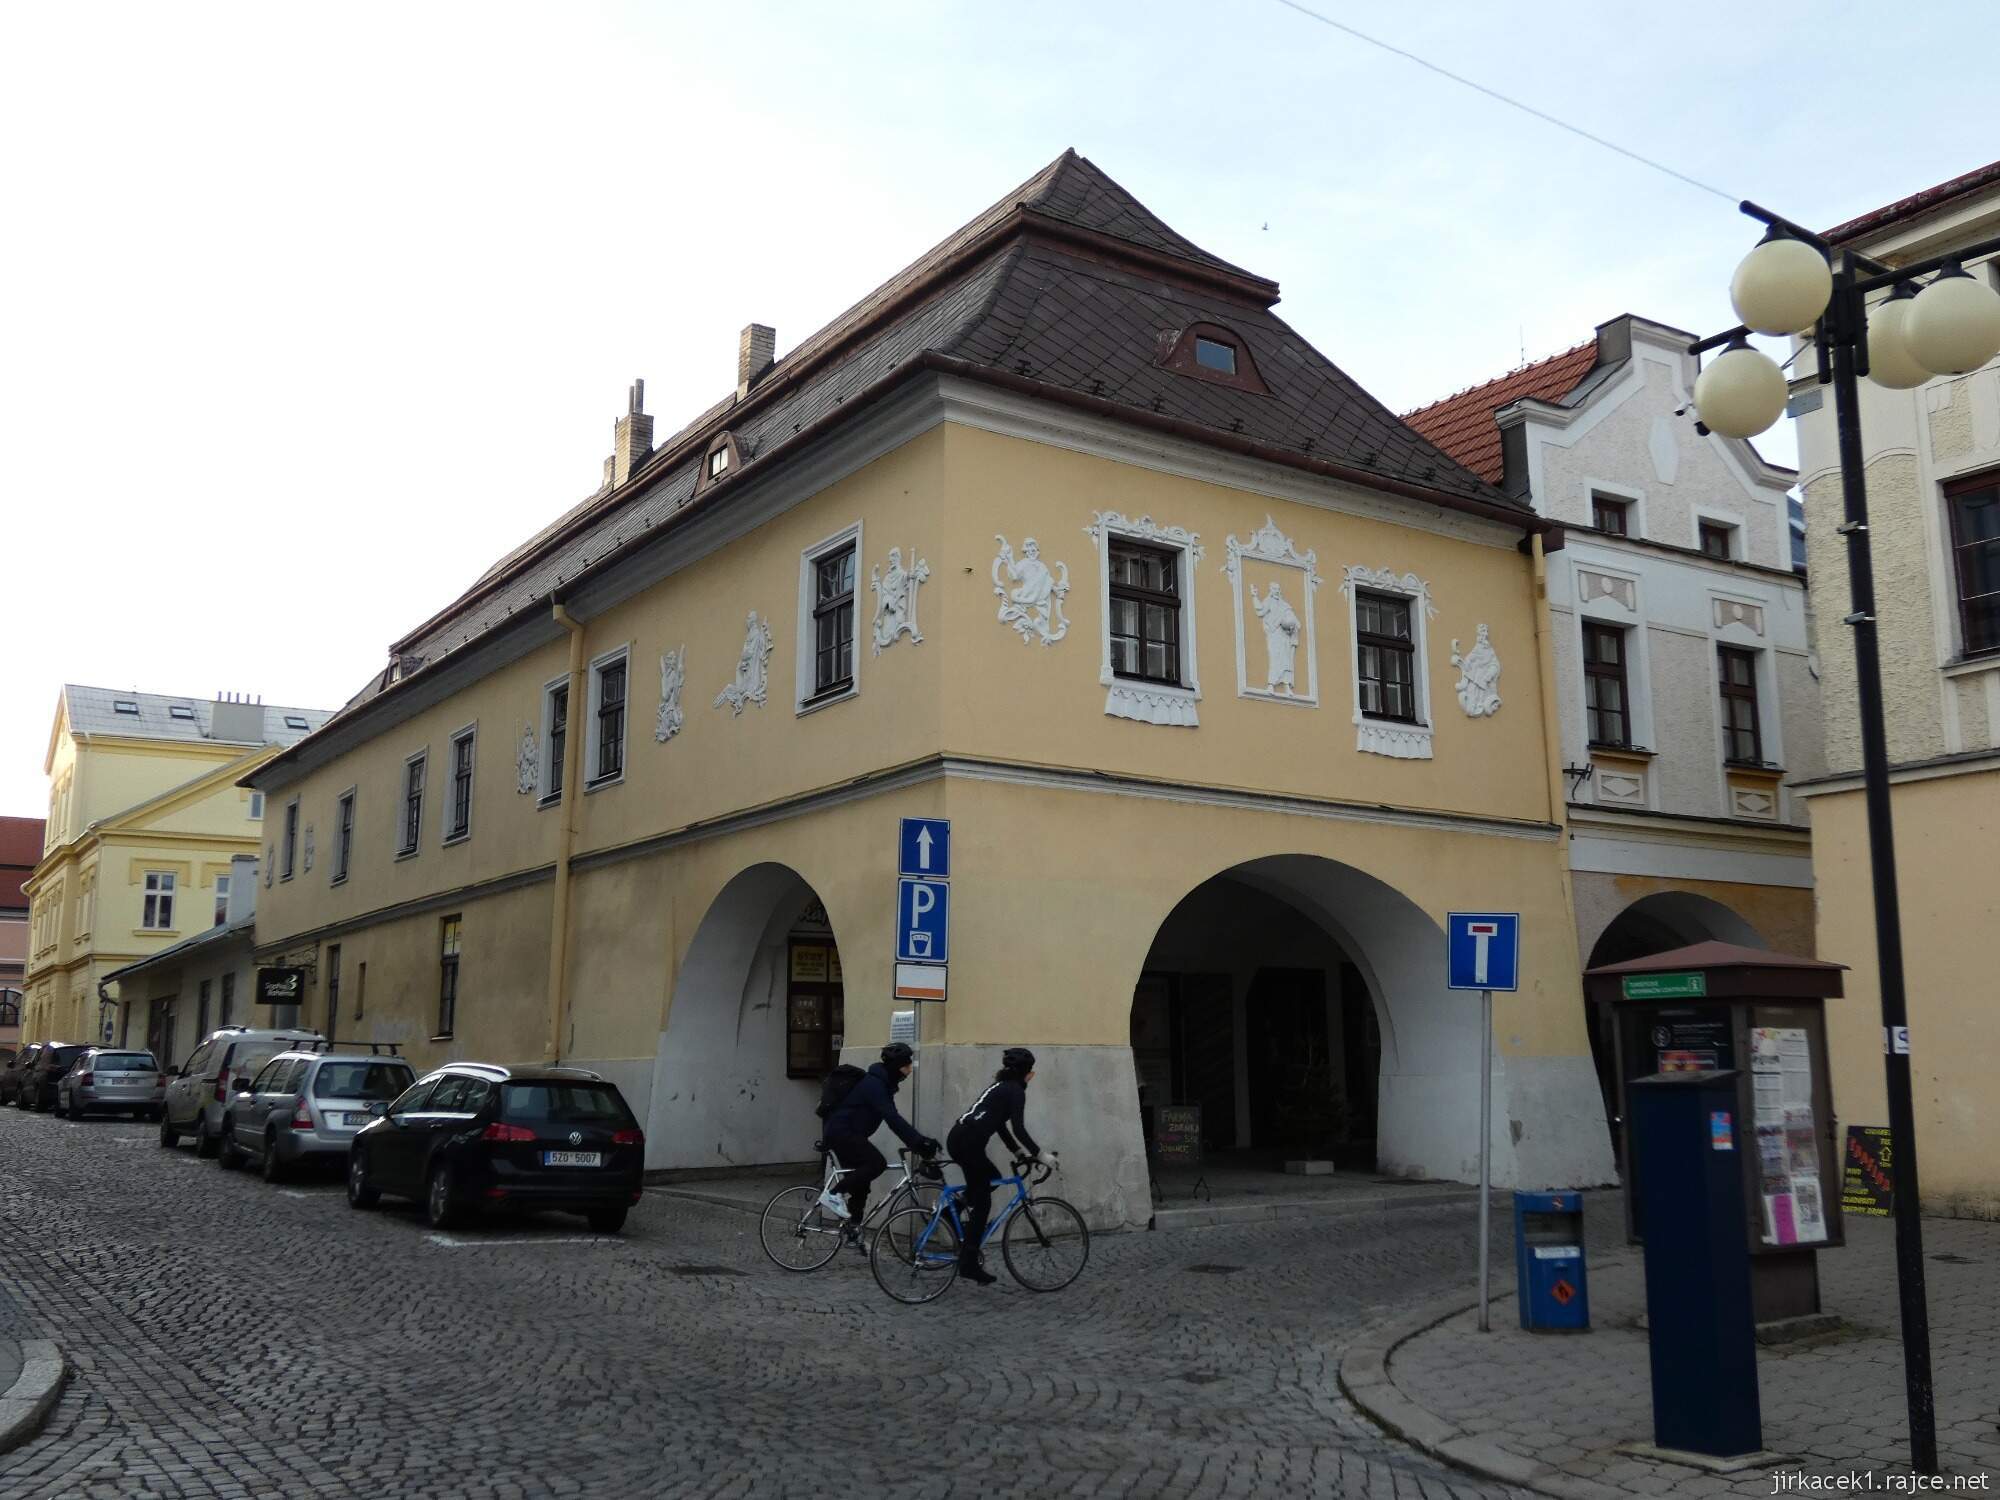 I - Valašské Meziříčí - náměstí 19 - dům s podloubím na nároží č.33